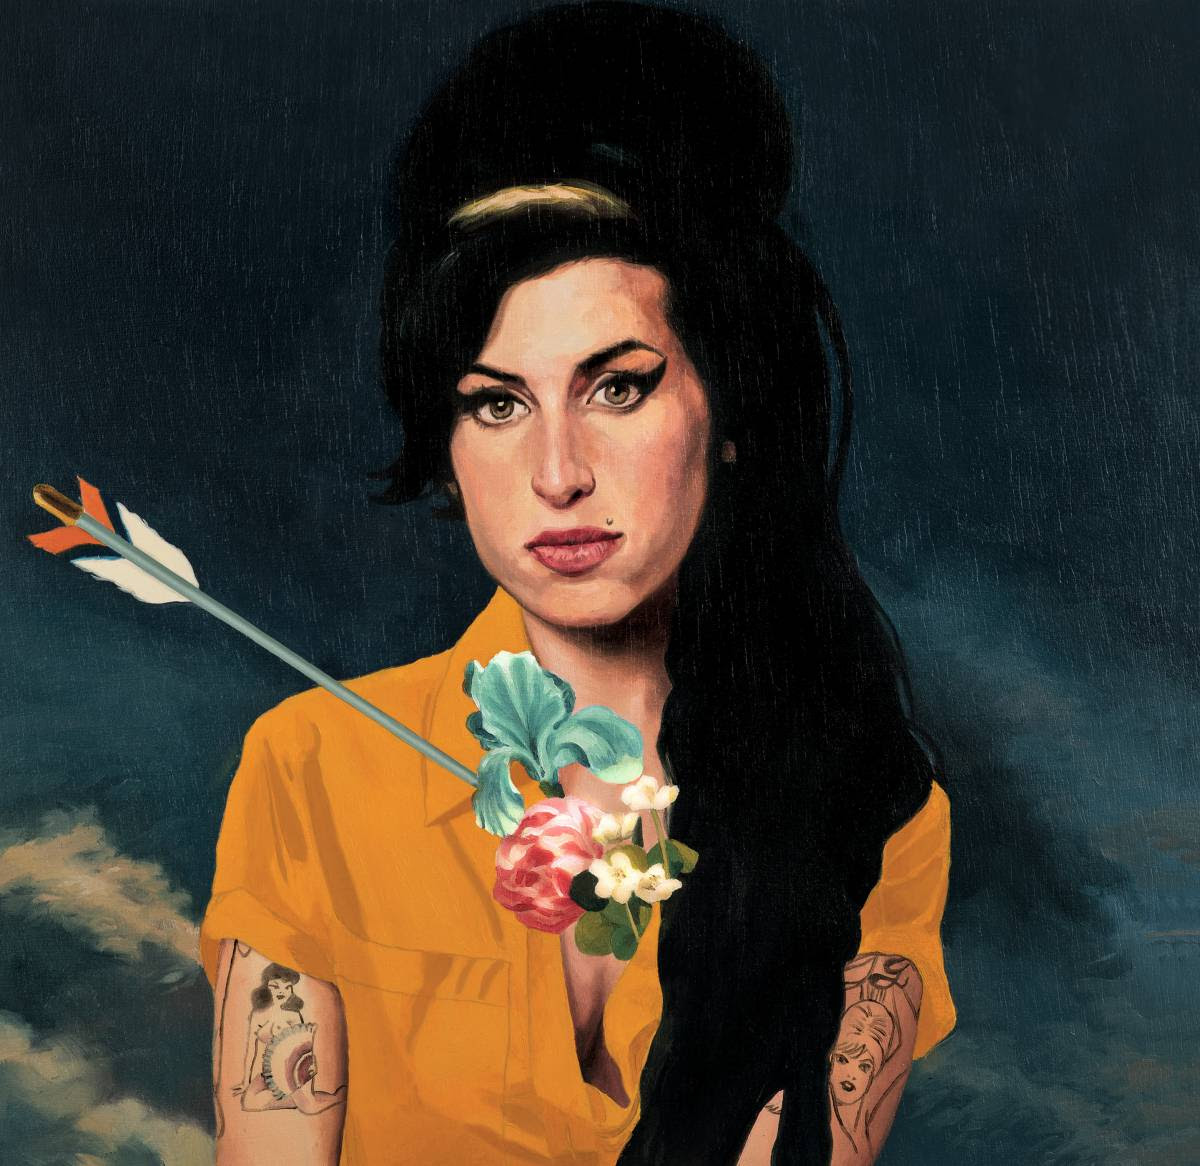 Amy Winehouse, confesiones de una fan irredenta